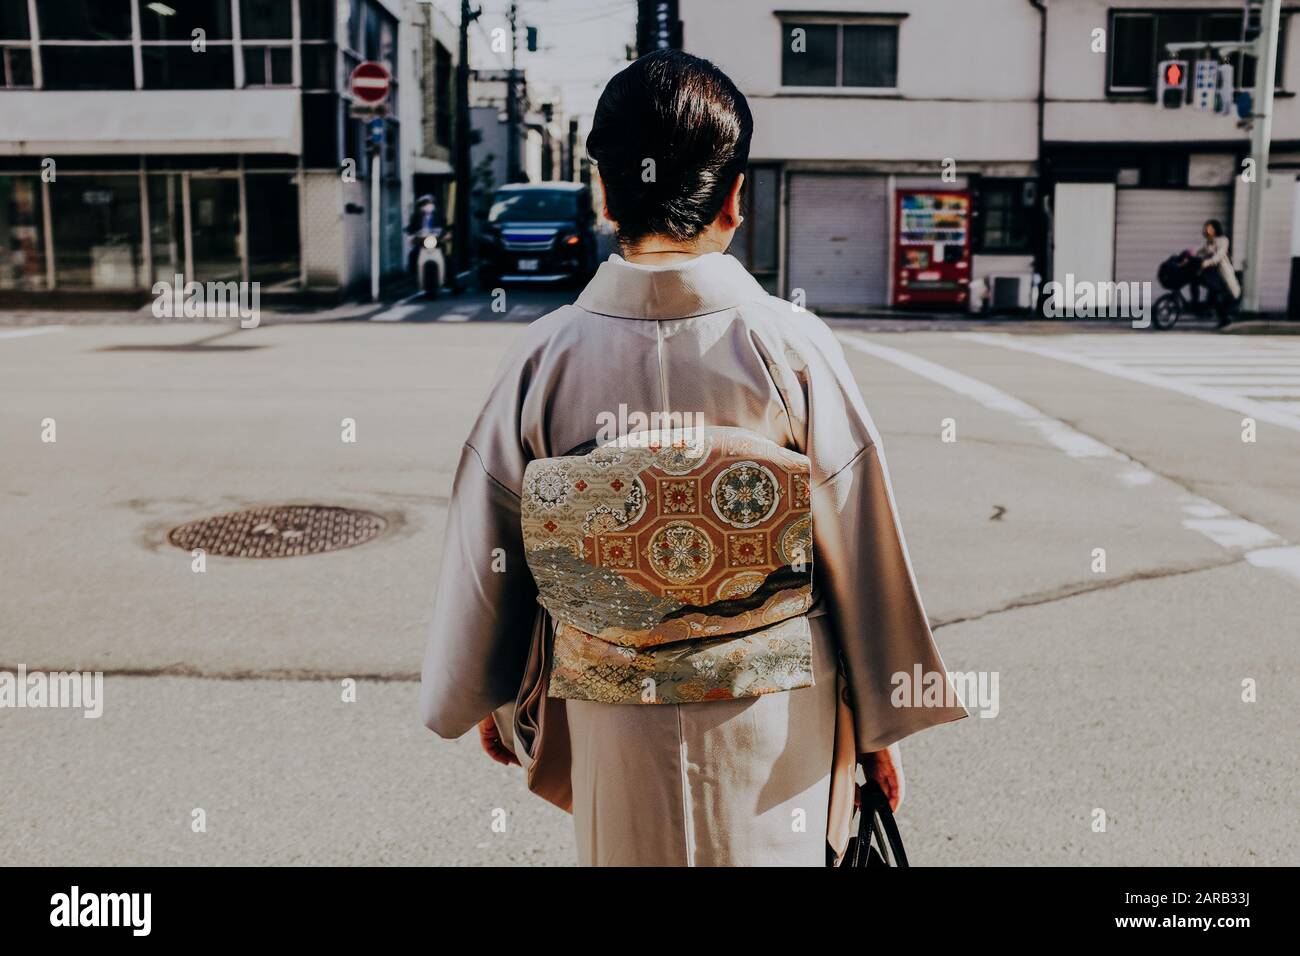 Escena de calle todos los días en Japón. Mujeres japonesas en Kimono tradicional Foto de stock